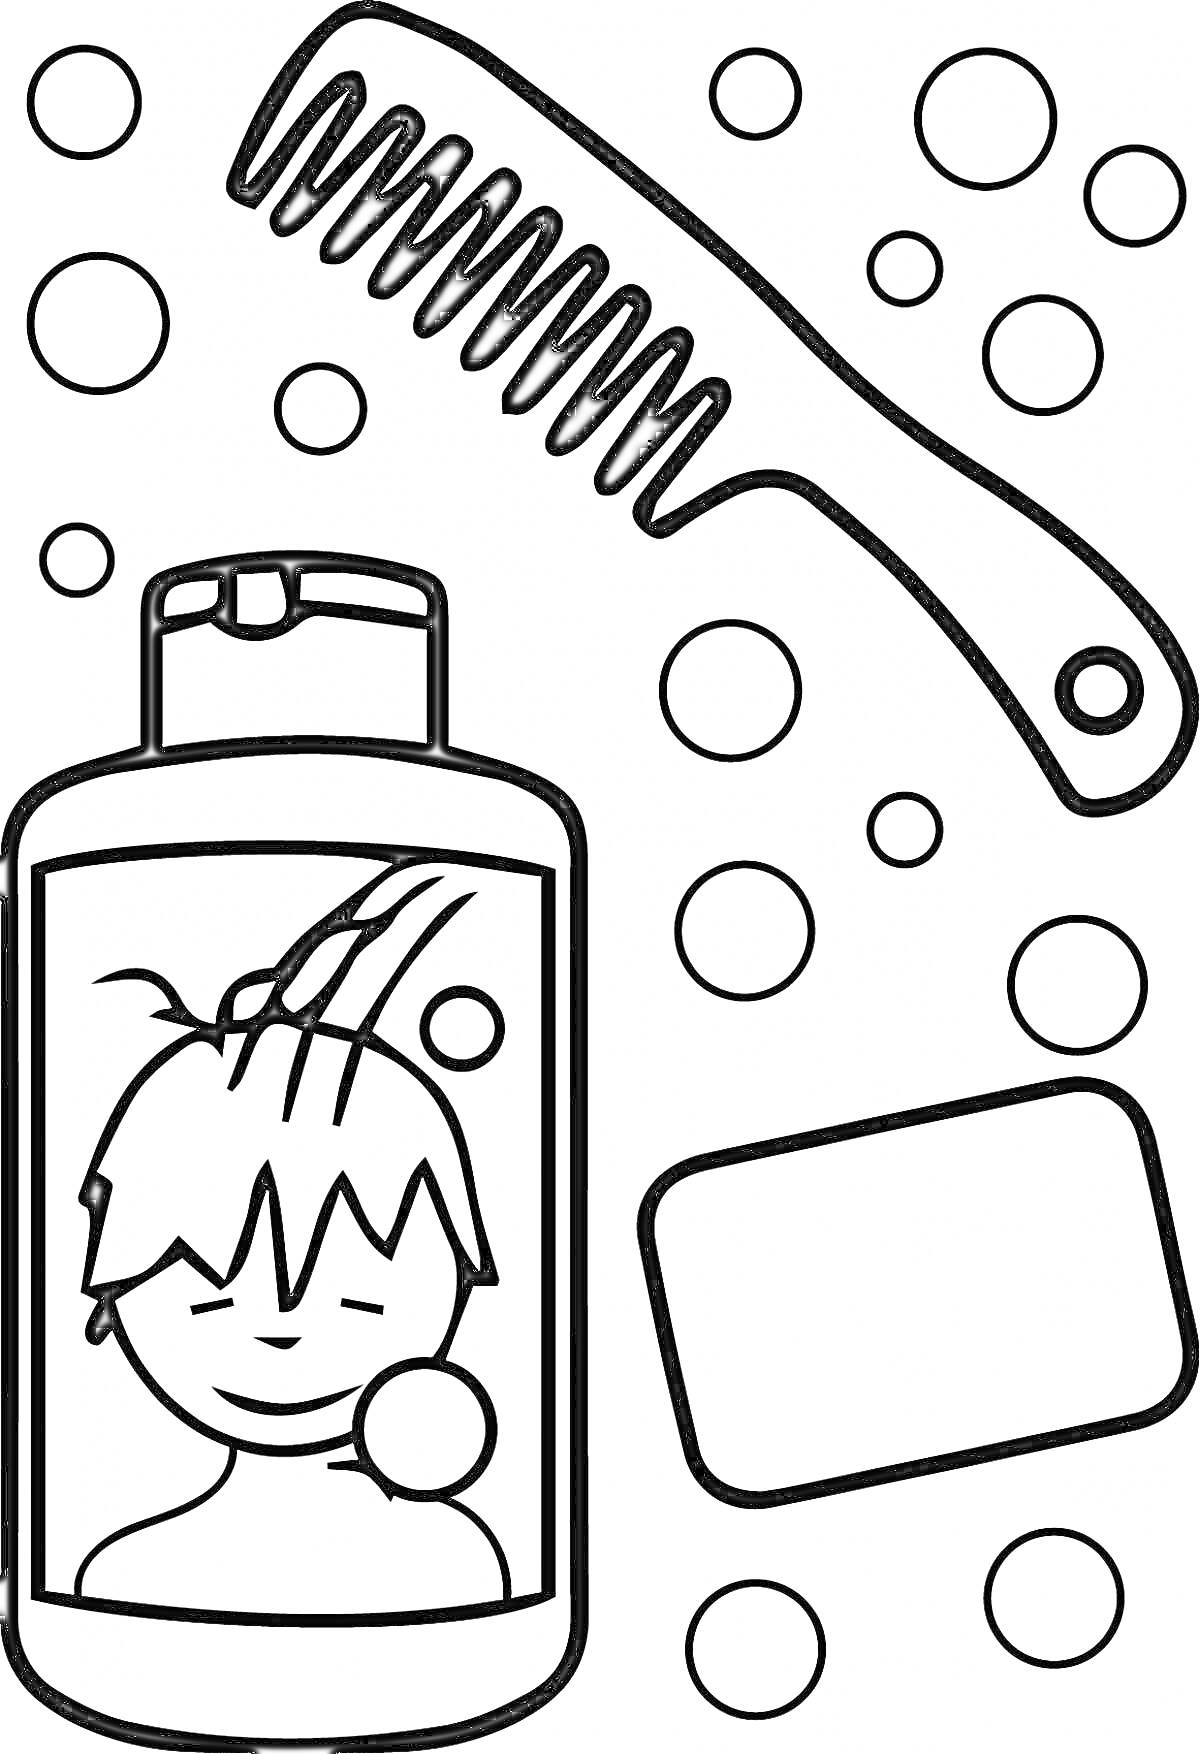 Раскраска Шампунь с изображением мальчика, мыло, расчёска и пузыри